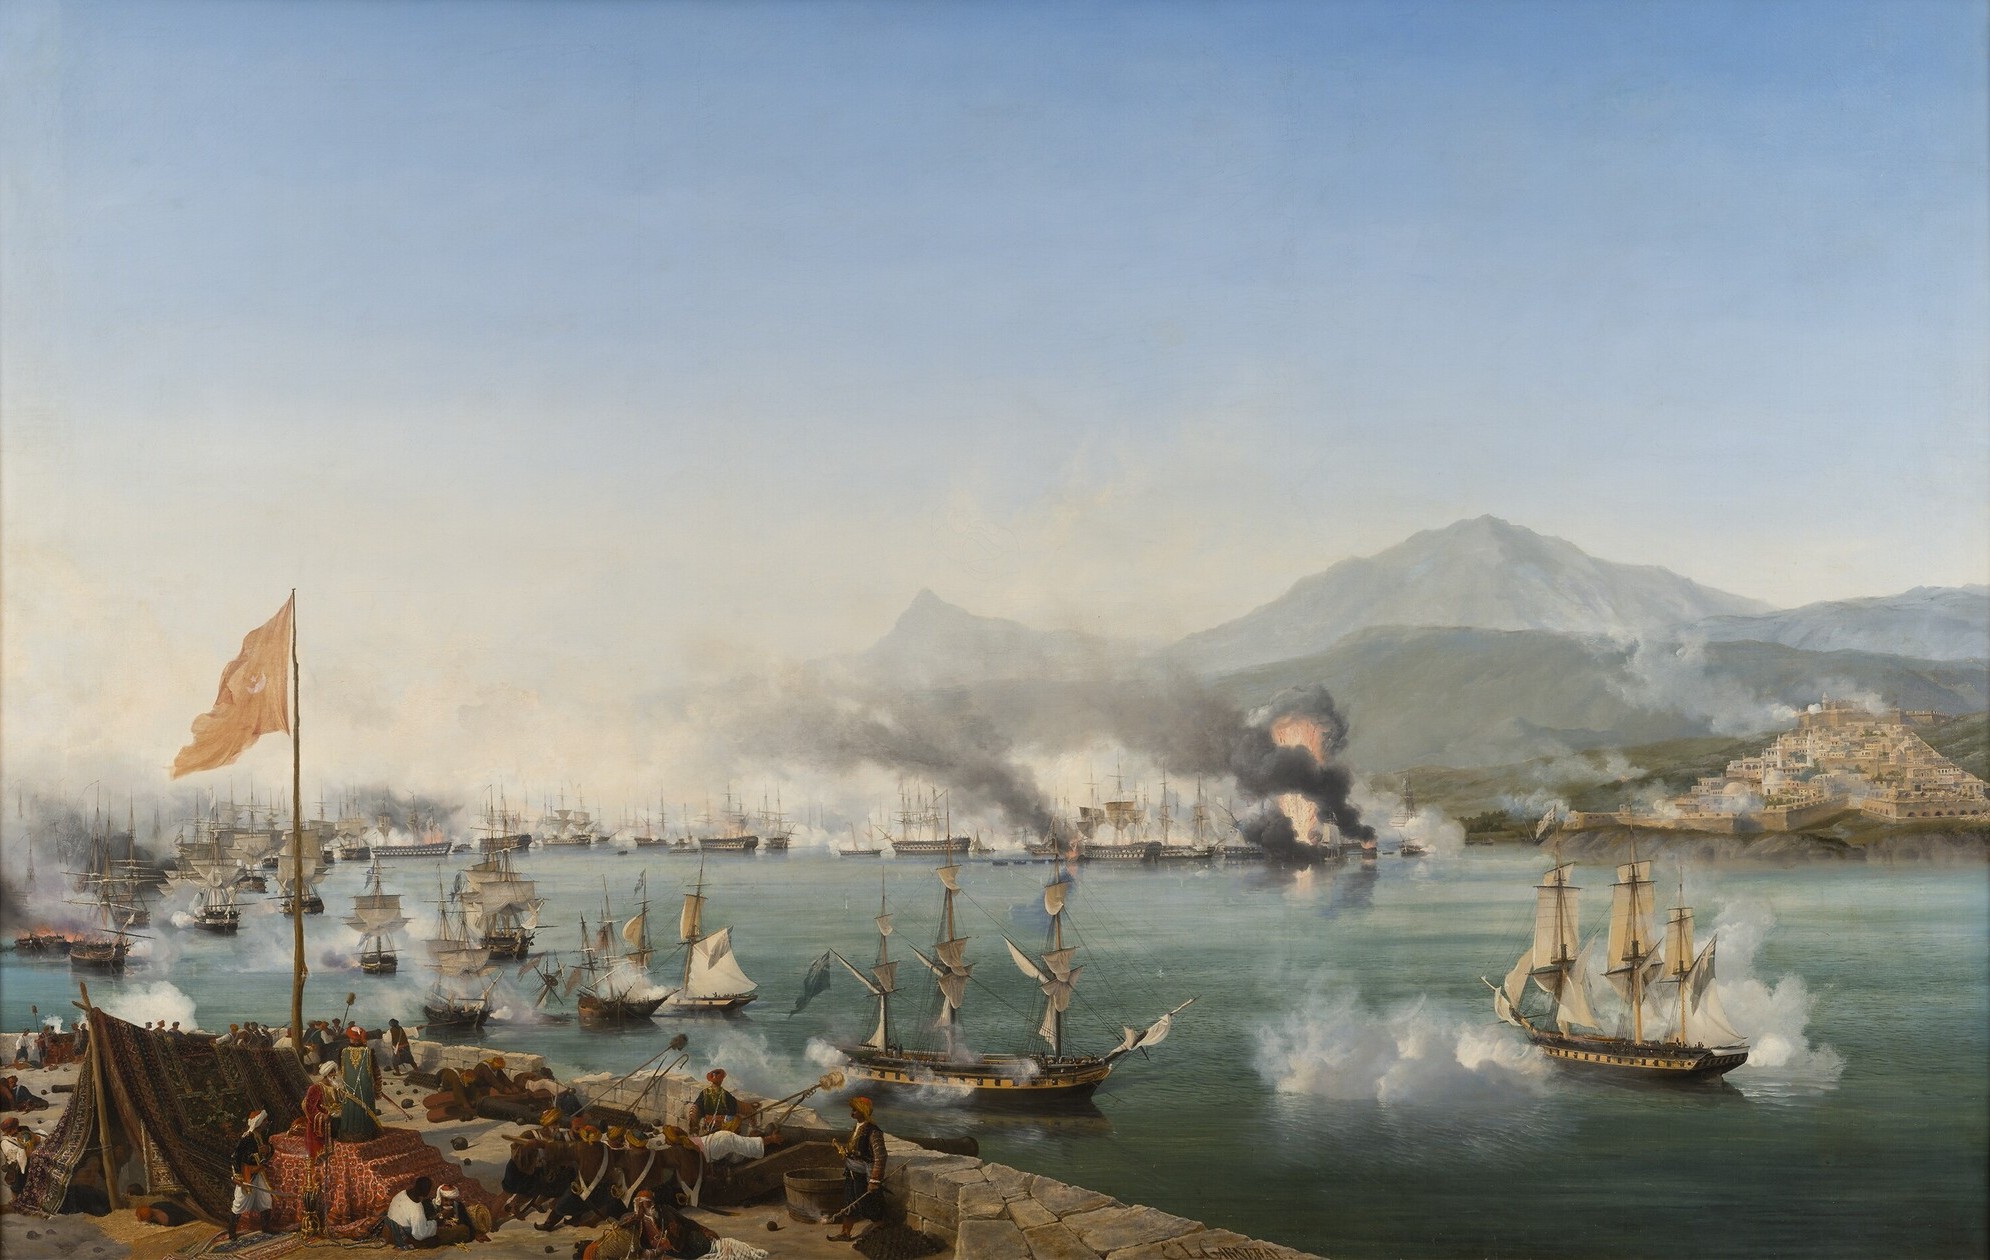 La bataille navale de Navarin (octobre 1827) illustrant la coalition du Royaume-uni, de la France, et de la Russie contre l'Empire ottoman, lors de la guerre d'indépendance de la Grèce. © Garneray, Wikimedia Commons, DP